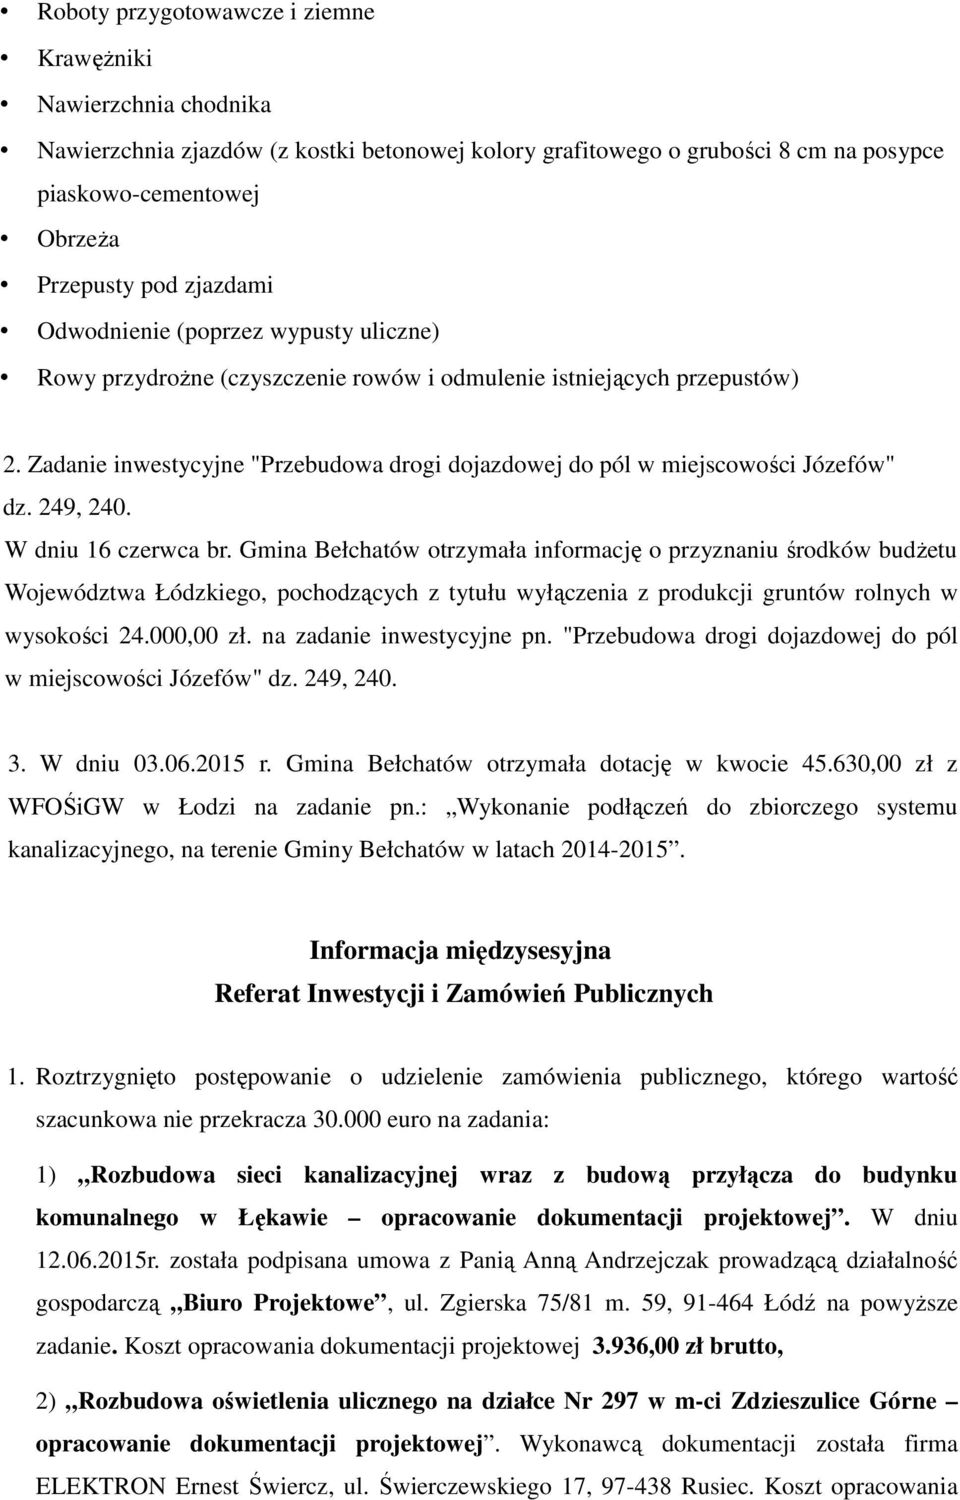 Zadanie inwestycyjne "Przebudowa drogi dojazdowej do pól w miejscowości Józefów" dz. 249, 240. W dniu 16 czerwca br.